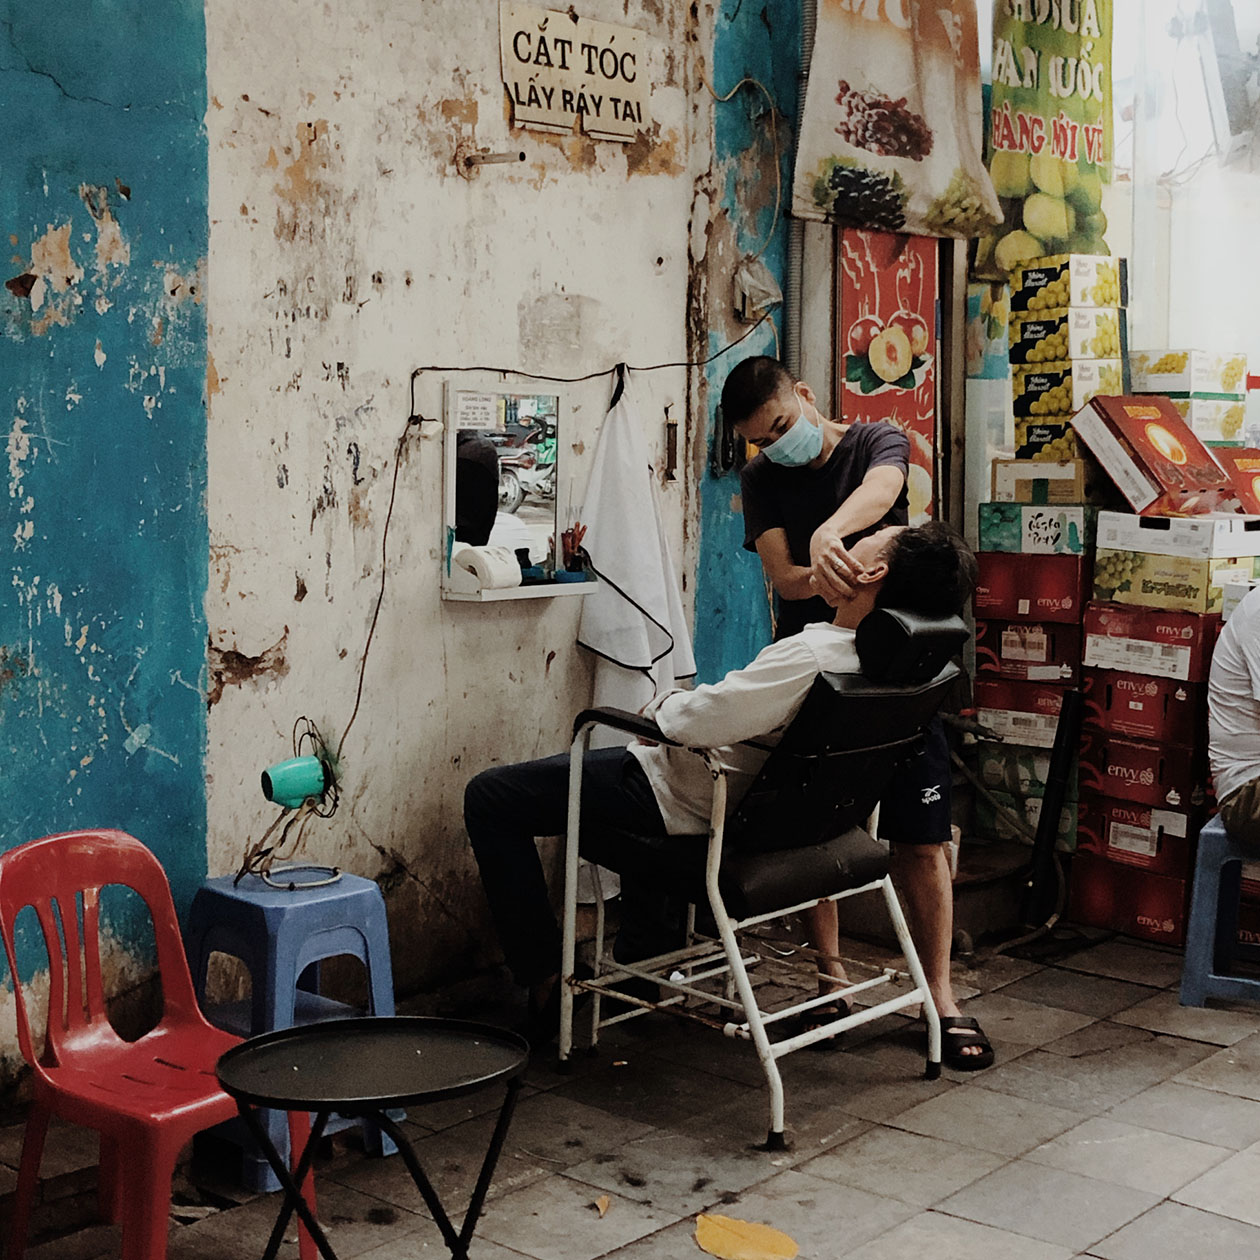 Так выглядит типичная парикмахерская в Дананге. С виду отталкивающе, но сервис хороший